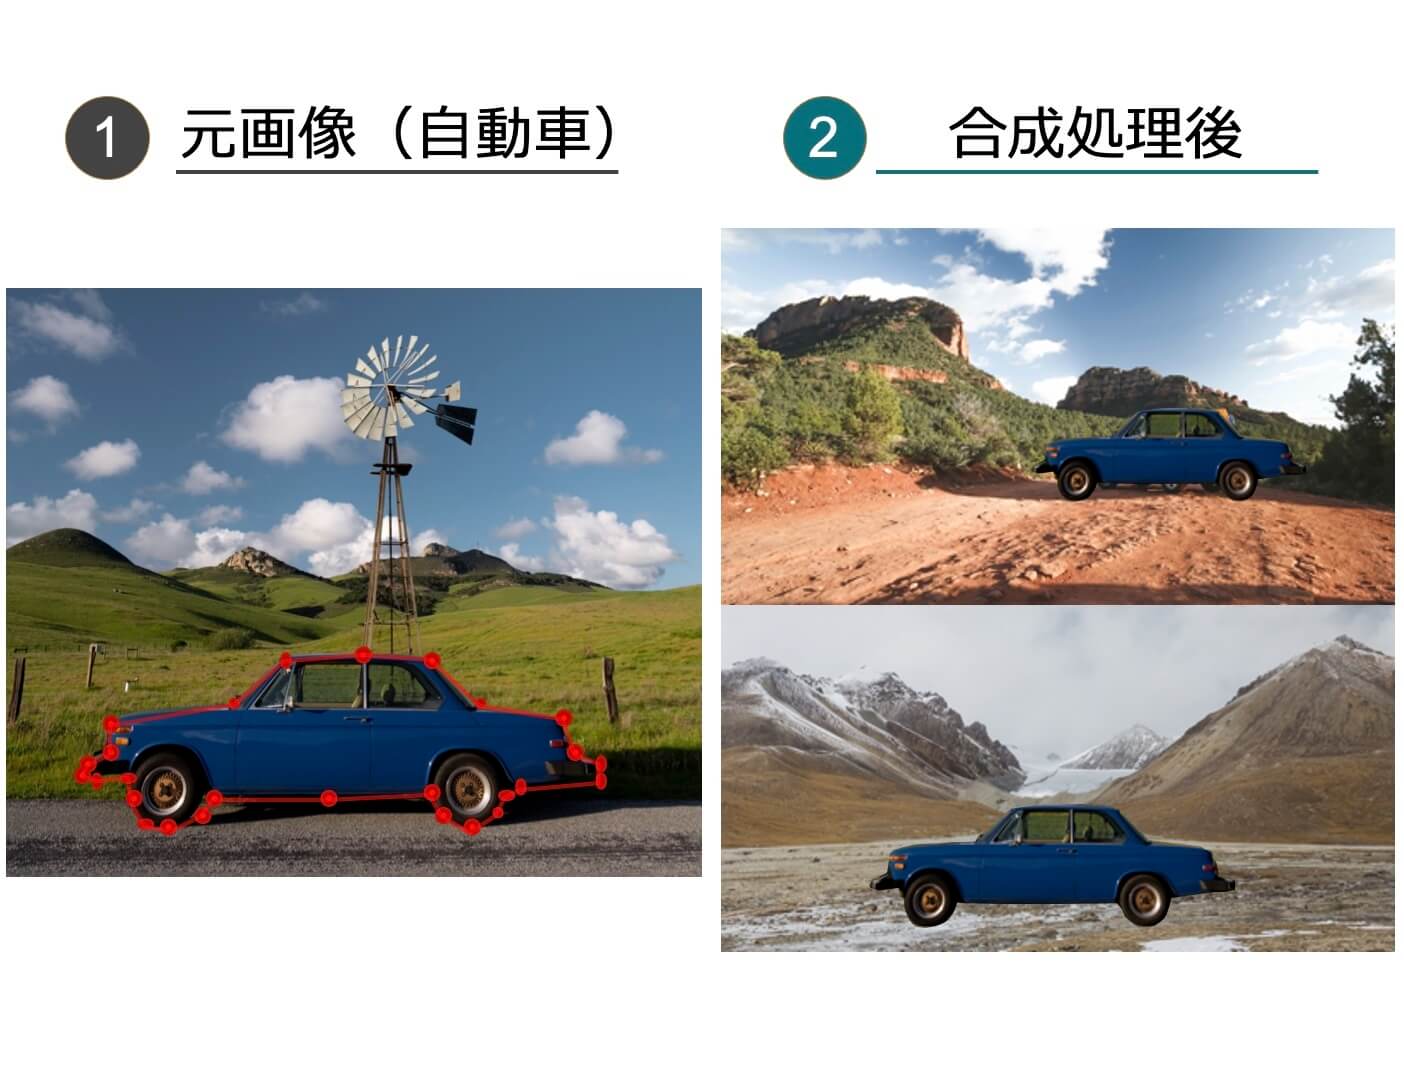 自動車に2パターンの背景を合成した画像合成例